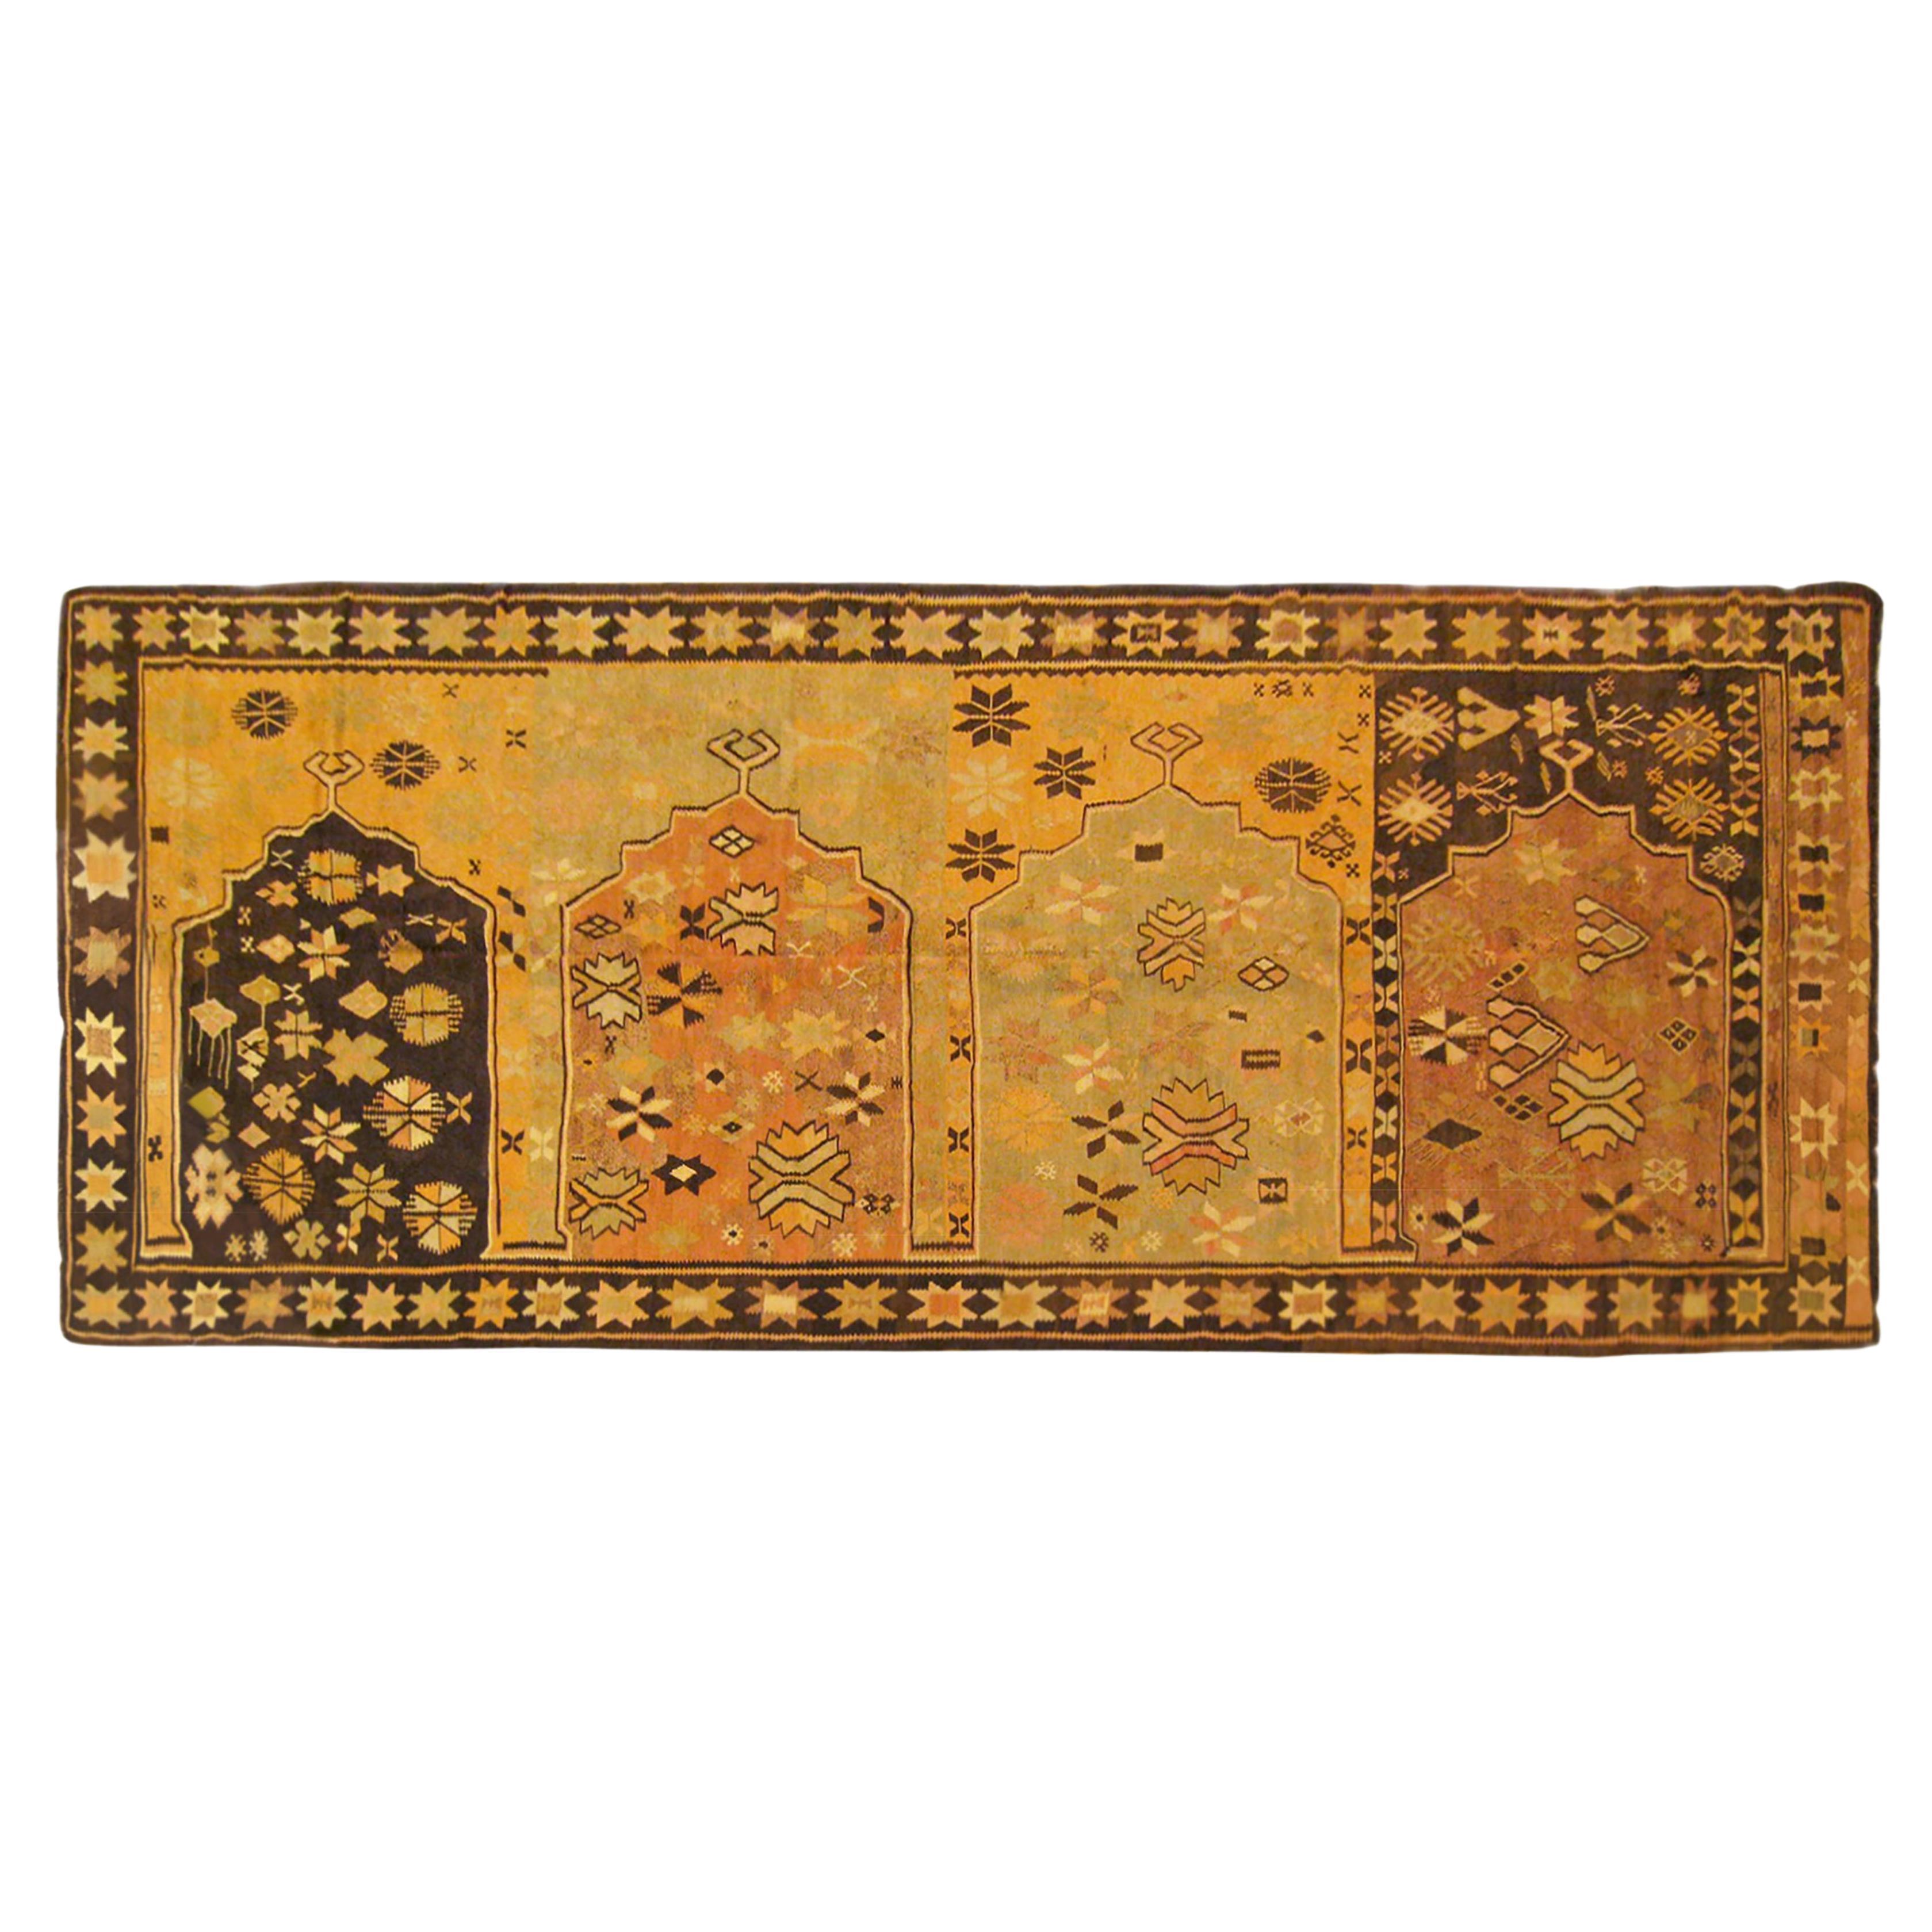 Türkischer dekorativer orientalischer Kelim-Teppich in Galeriegröße